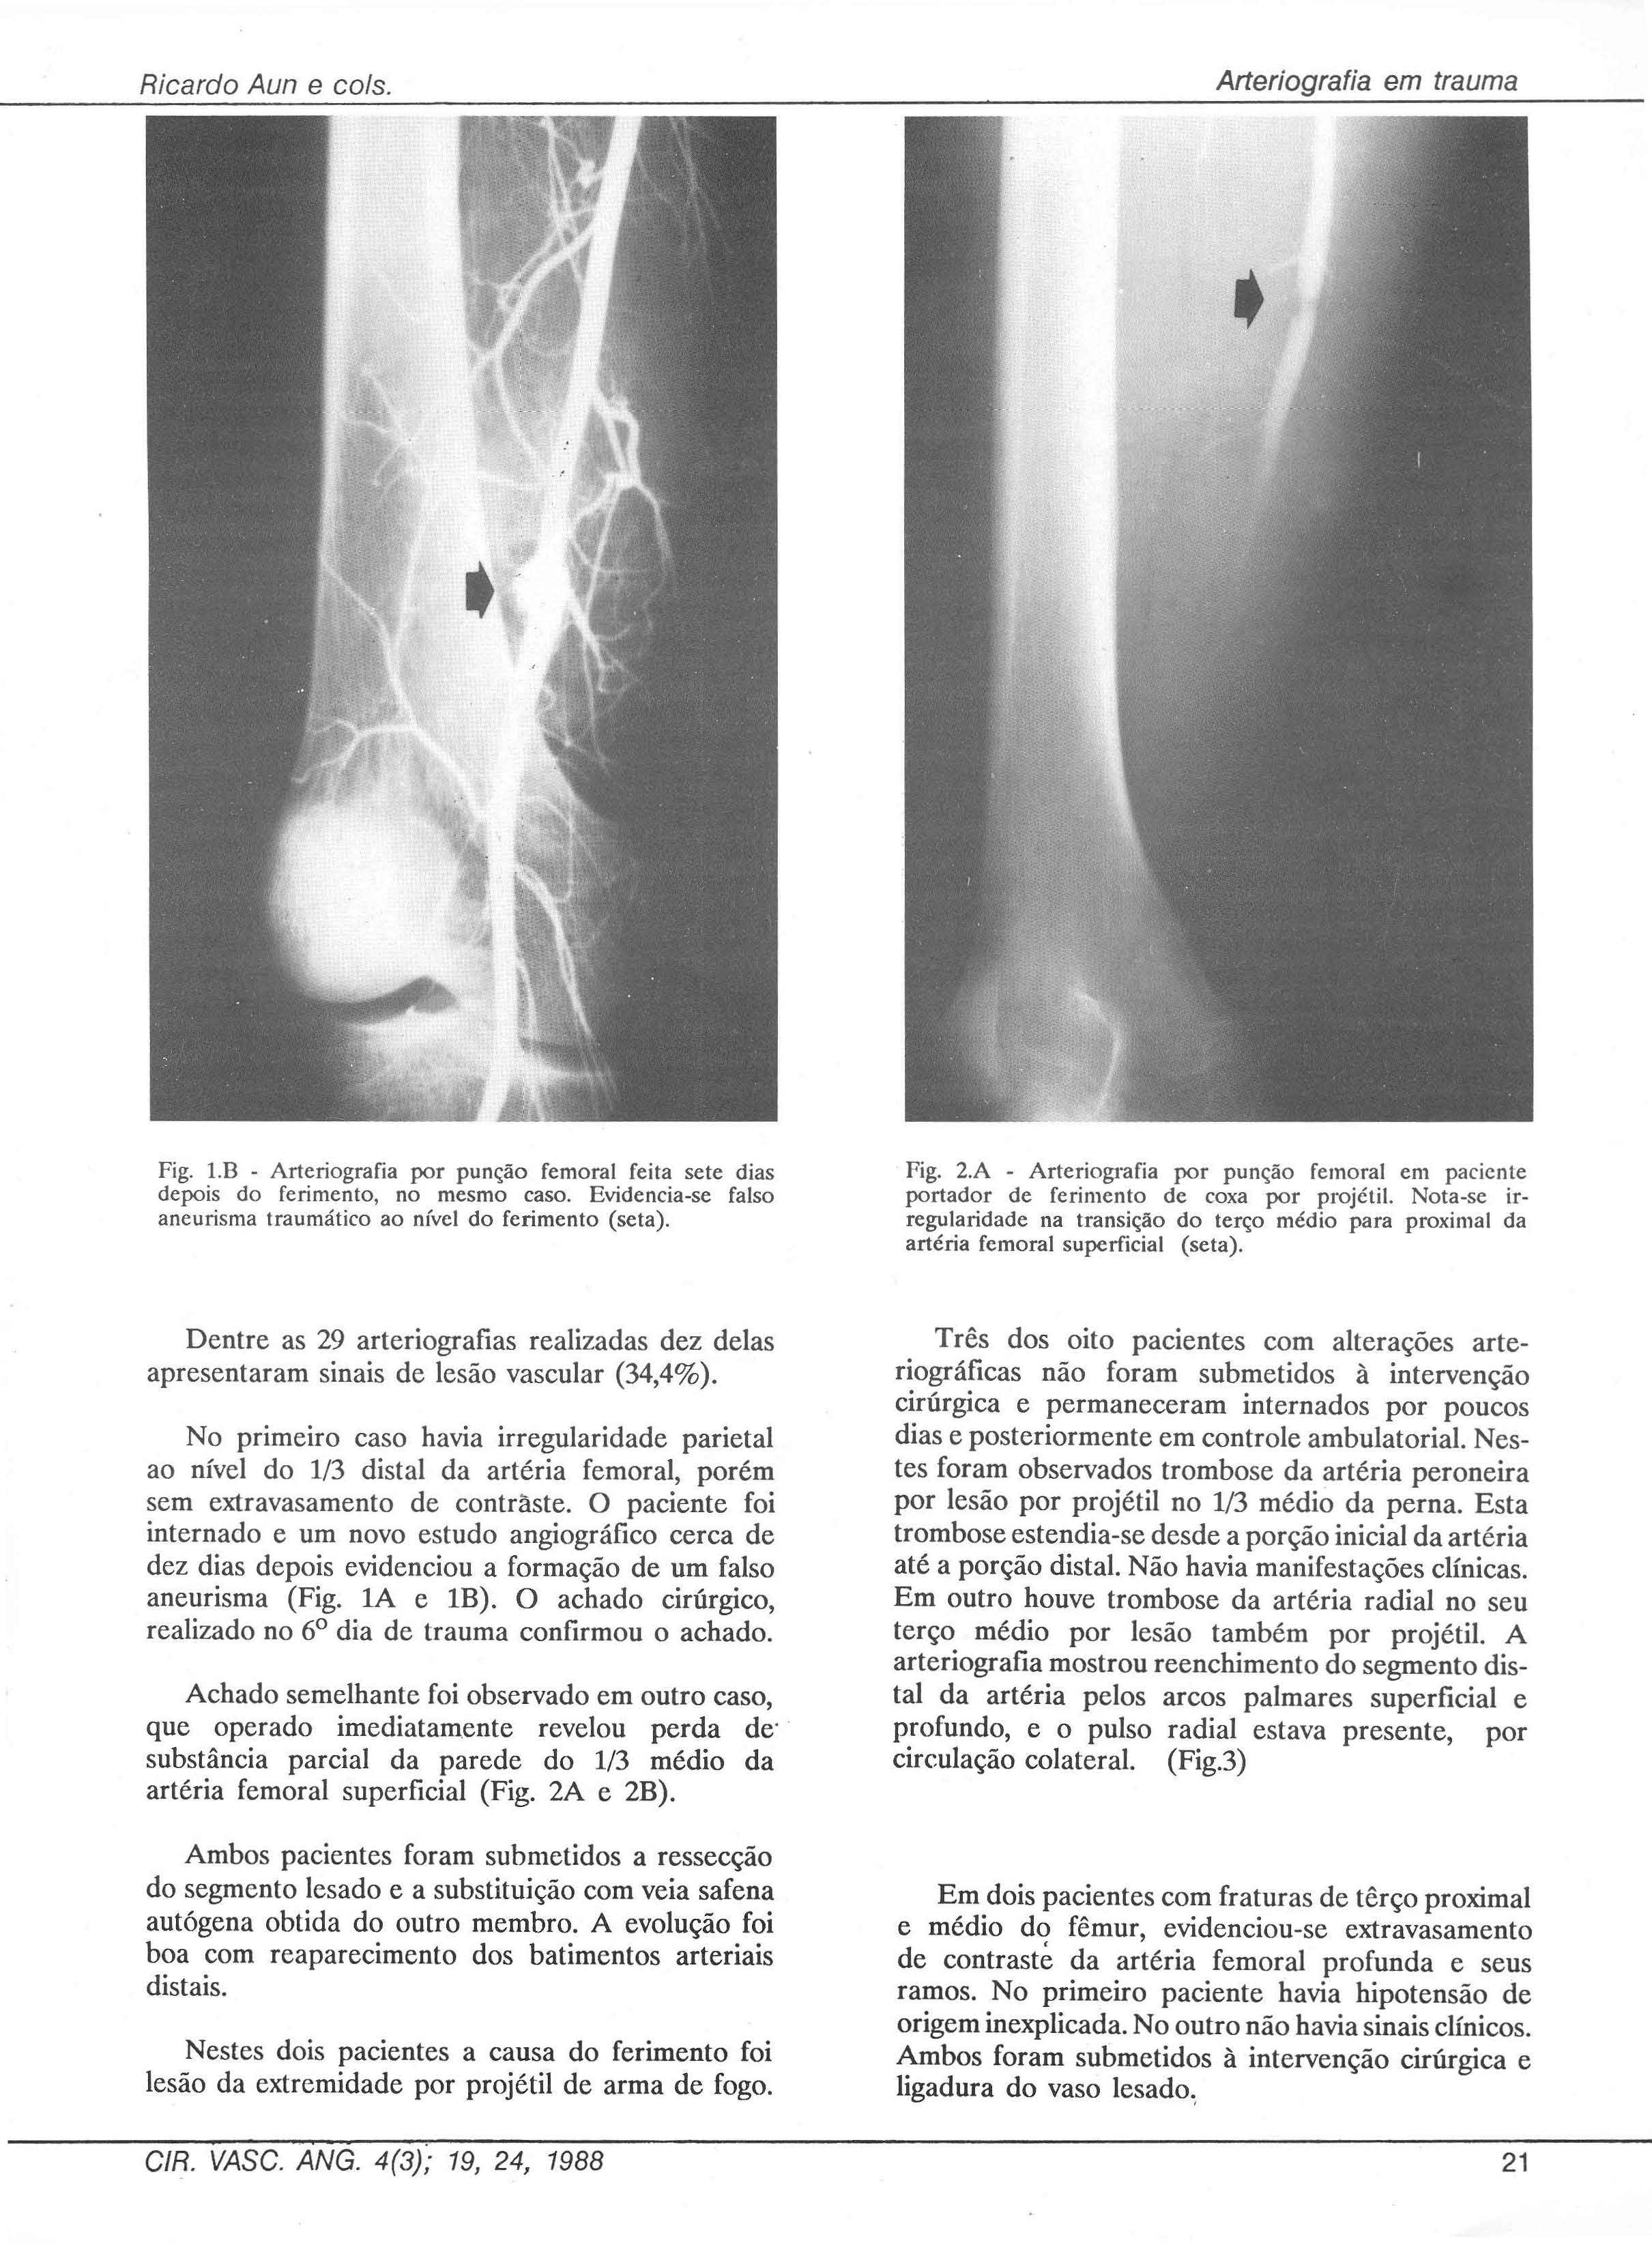 Ricardo Aun e co/s. Arteríografia em trauma Fig. l.b - Arteriografia por punção femoral feita sete dias depois do ferimento, no mesmo caso.